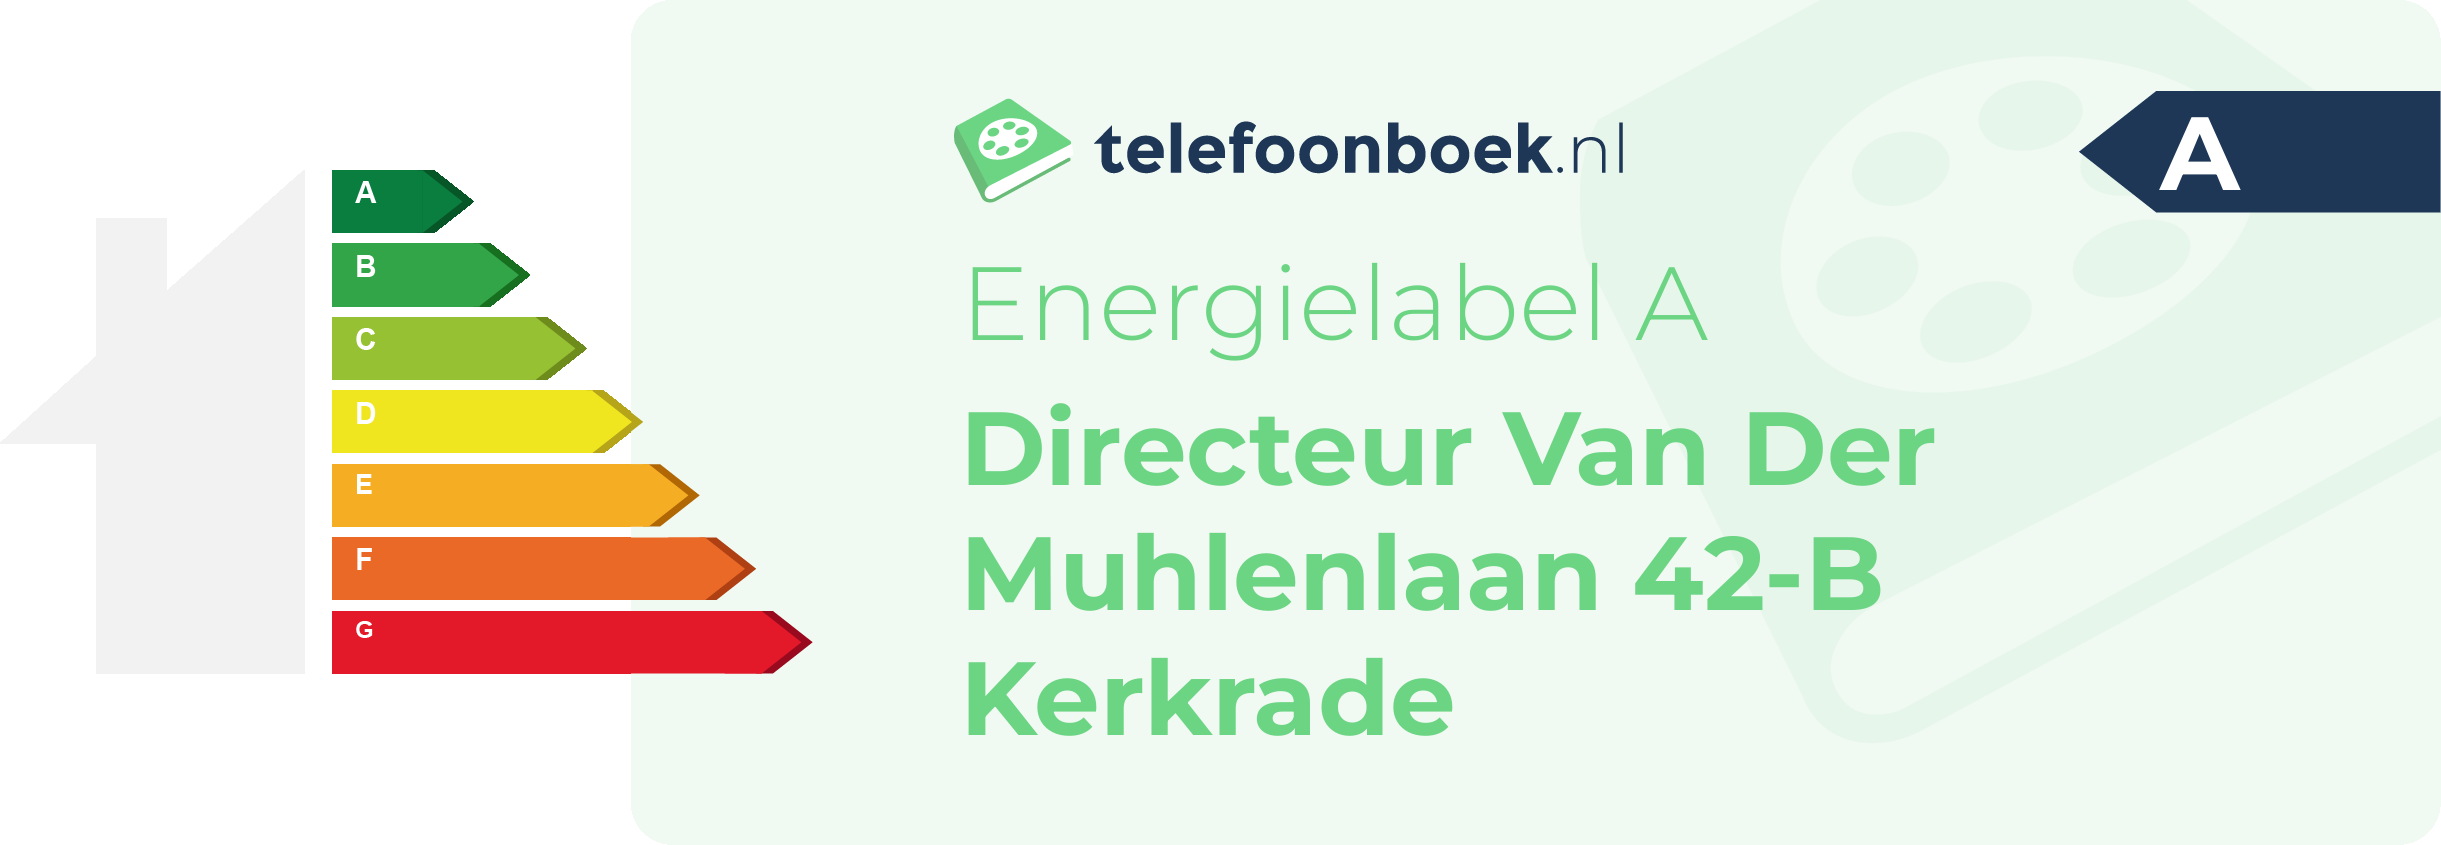 Energielabel Directeur Van Der Muhlenlaan 42-B Kerkrade